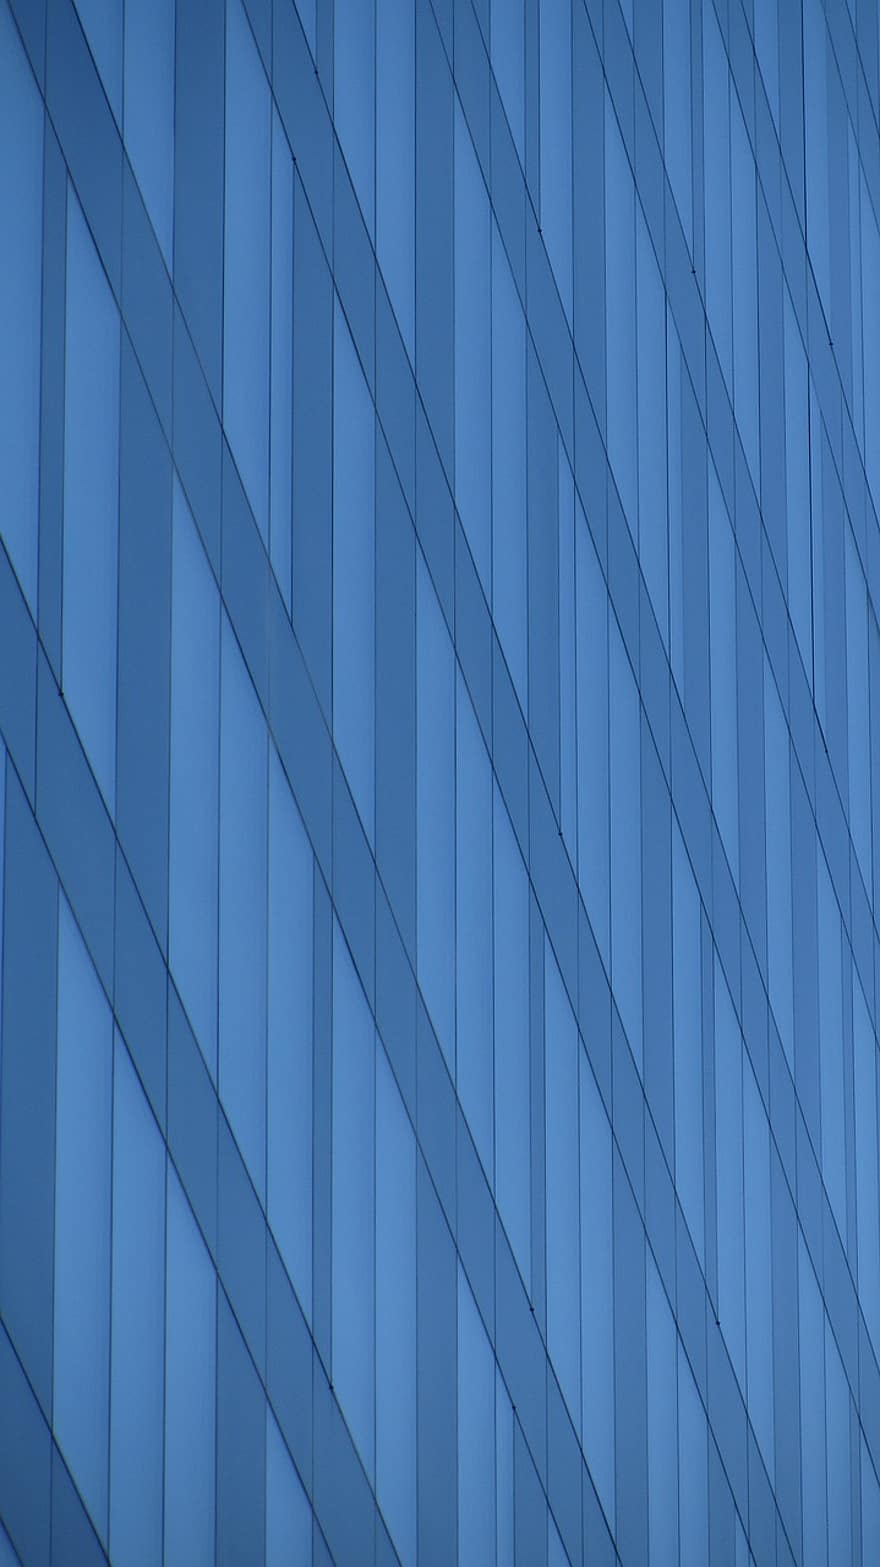 офисное здание, окно, современный, скосы, линии, шаблон, Аннотация, фоны, архитектура, дизайн, синий